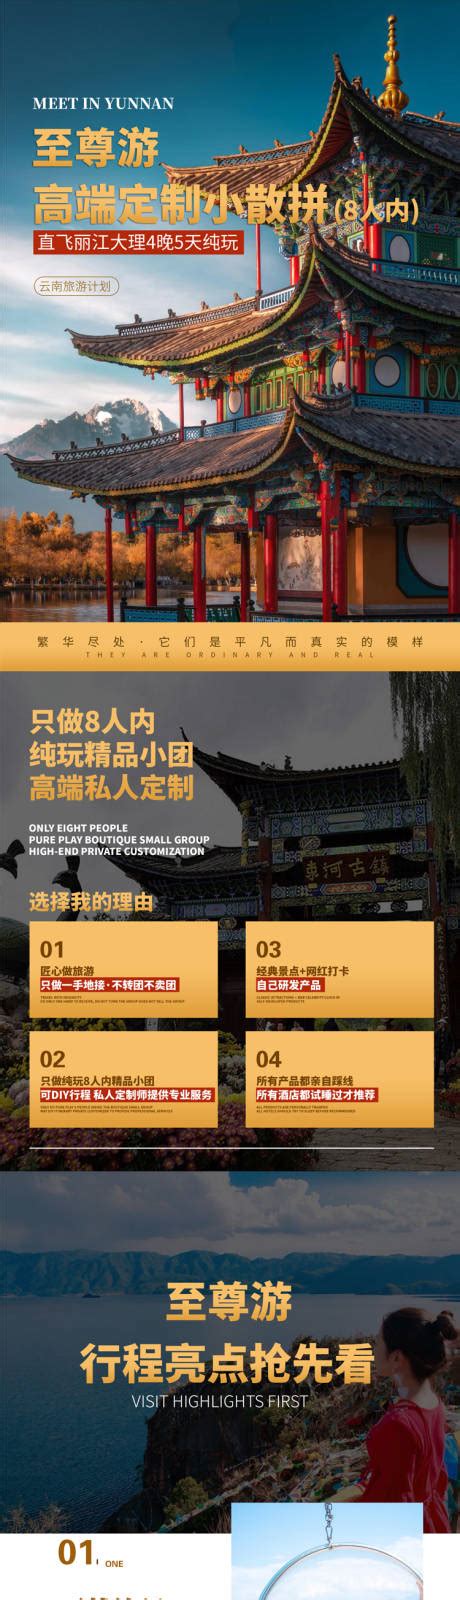 云南旅游行程详情页PSD电商设计素材海报模板免费下载-享设计